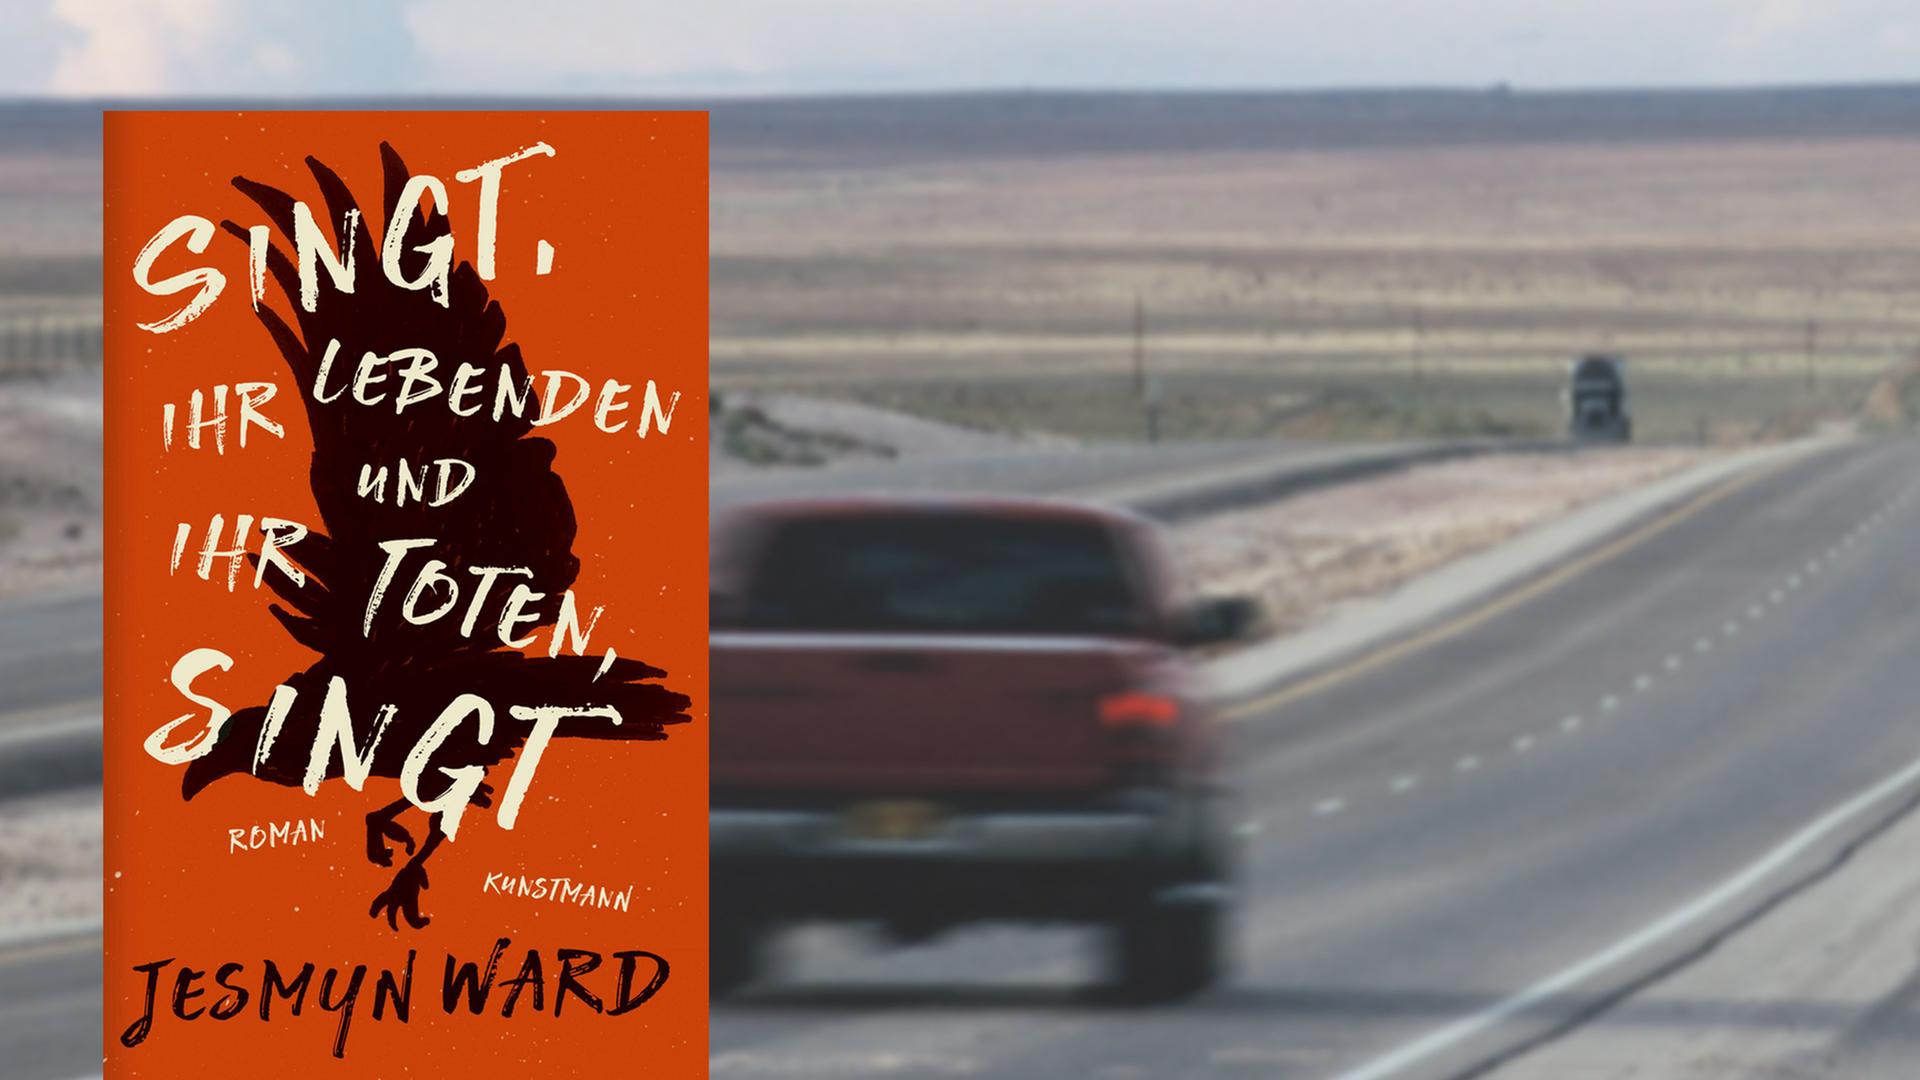 Buchcover "Singt Ihr Lebenden und Ihr Toten, Singt" von Jesmyn Ward, im Hintergrund ein Auto auf einer Straße in New Mexico